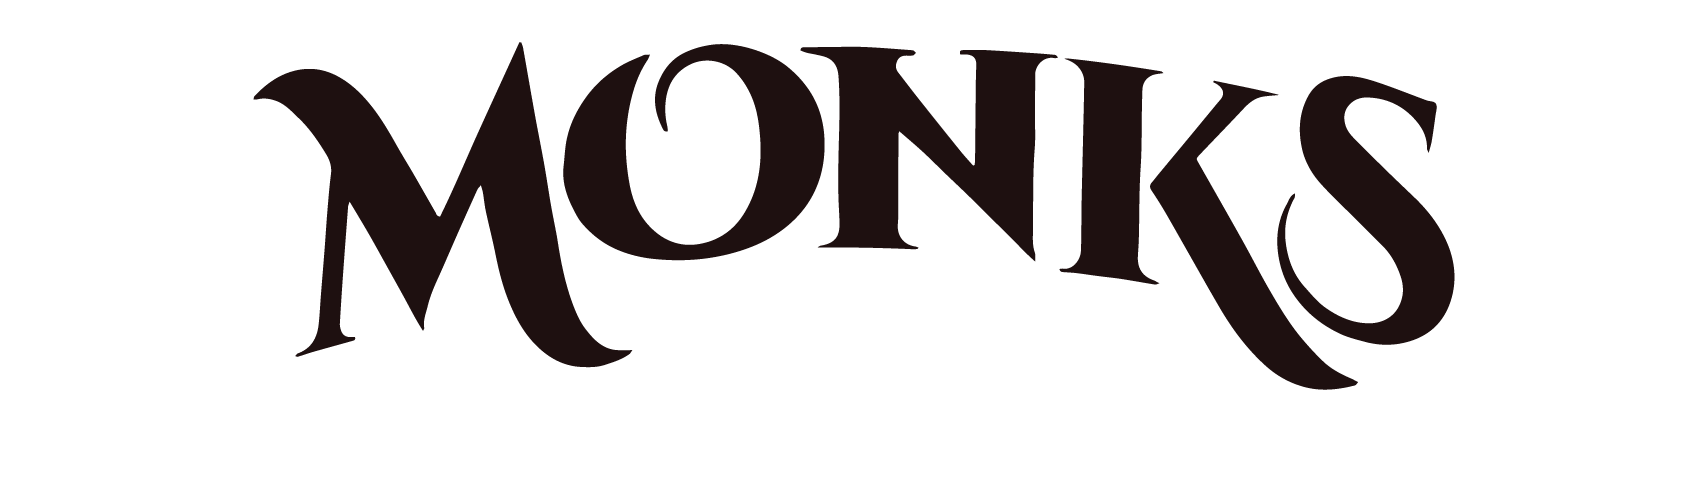 monks-black-logo